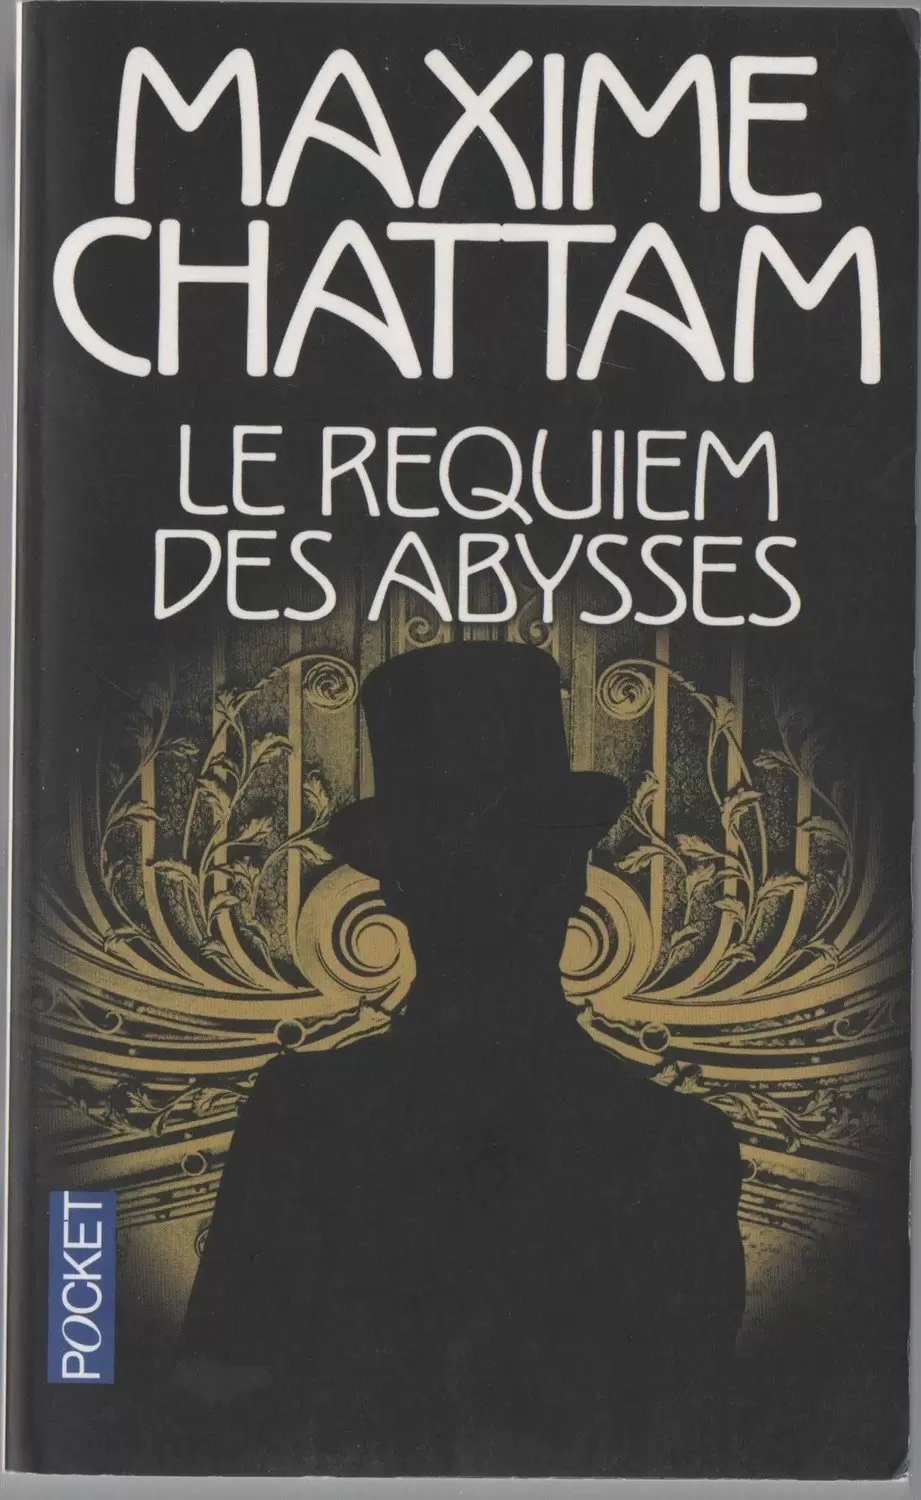 Maxime Chattam - Le Requiem des abysses